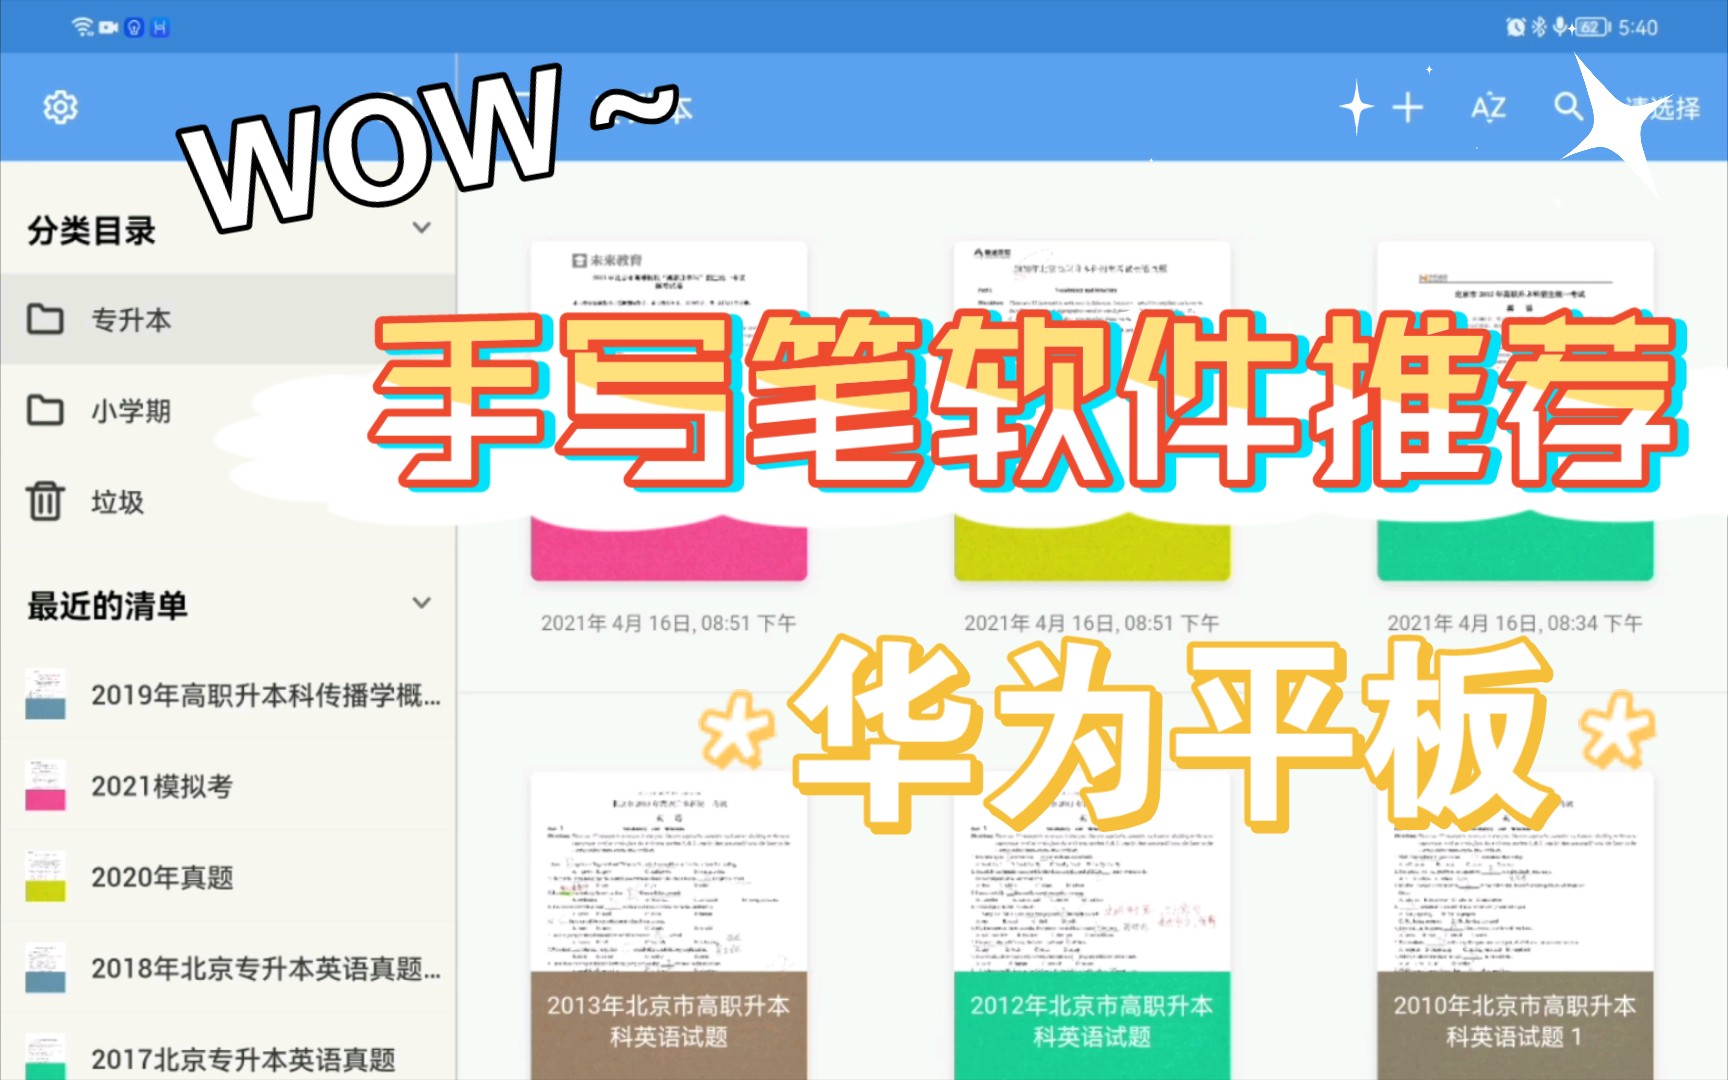 【华为平板】手写笔软件推荐合集来喽！！！